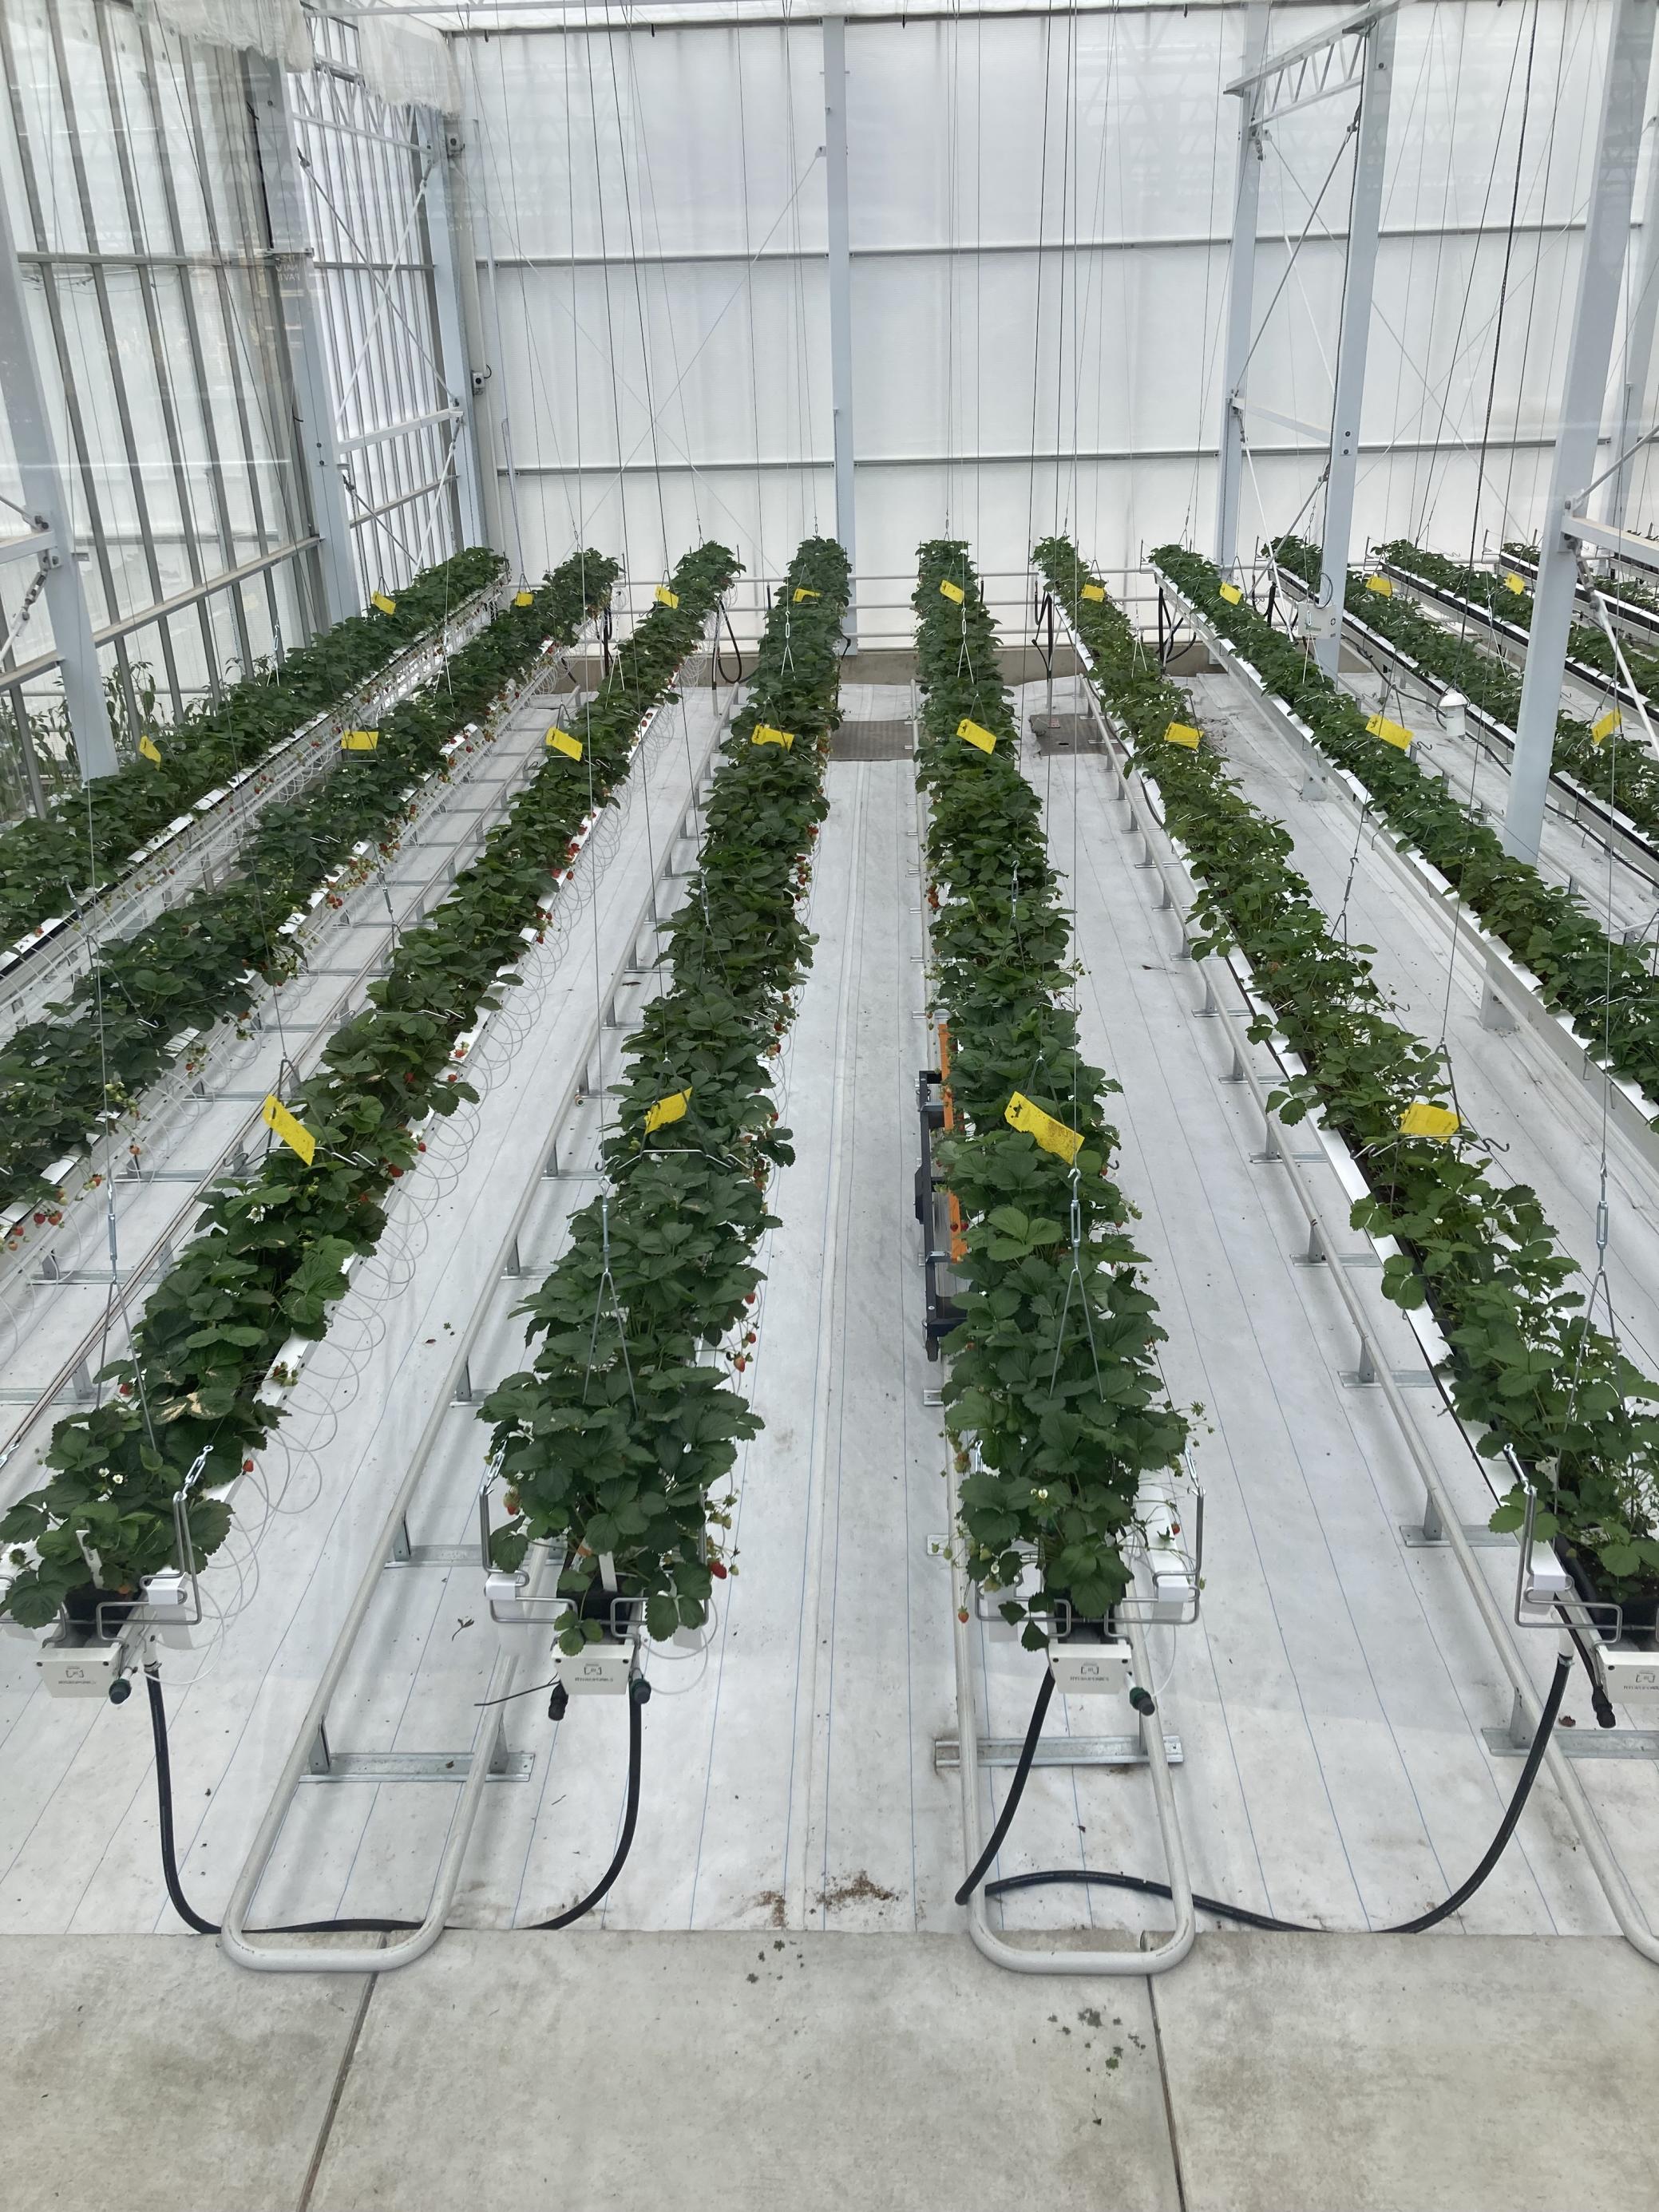 Erdbeerpflanzen wachsen in Nährkulturen in Behältern, die von der Decke eines Gebäudes hängen. So könnte Landwirtschaft in der Stadt aussehen, Licht und Bewässerung werden vom Computer gesteuert.